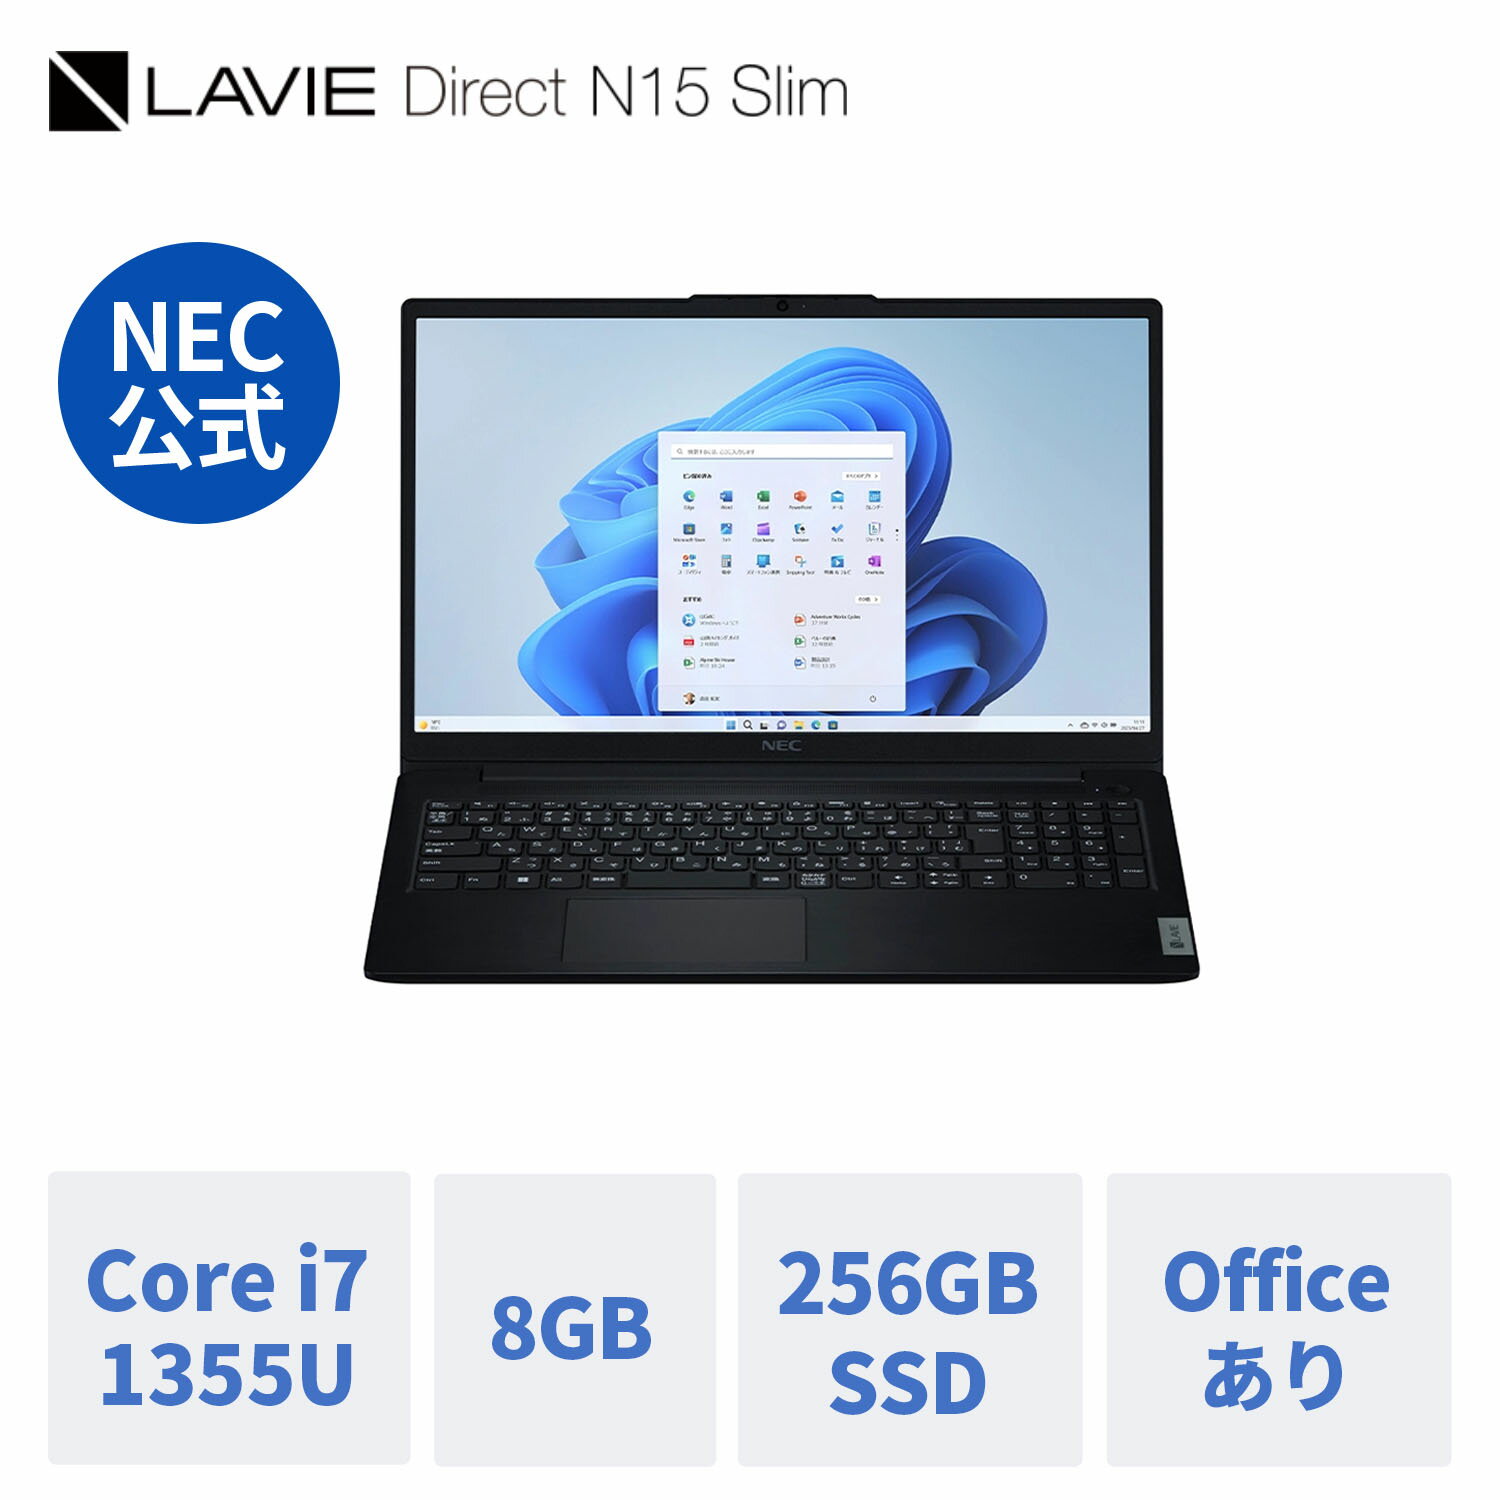  新品 NEC ノートパソコン office付き LAVIE Direct N15 Slim 15.6インチ Windows 11 Home Core i7-1355U メモリ 8GB 256GB SSD 1年保証 送料無料 yxe